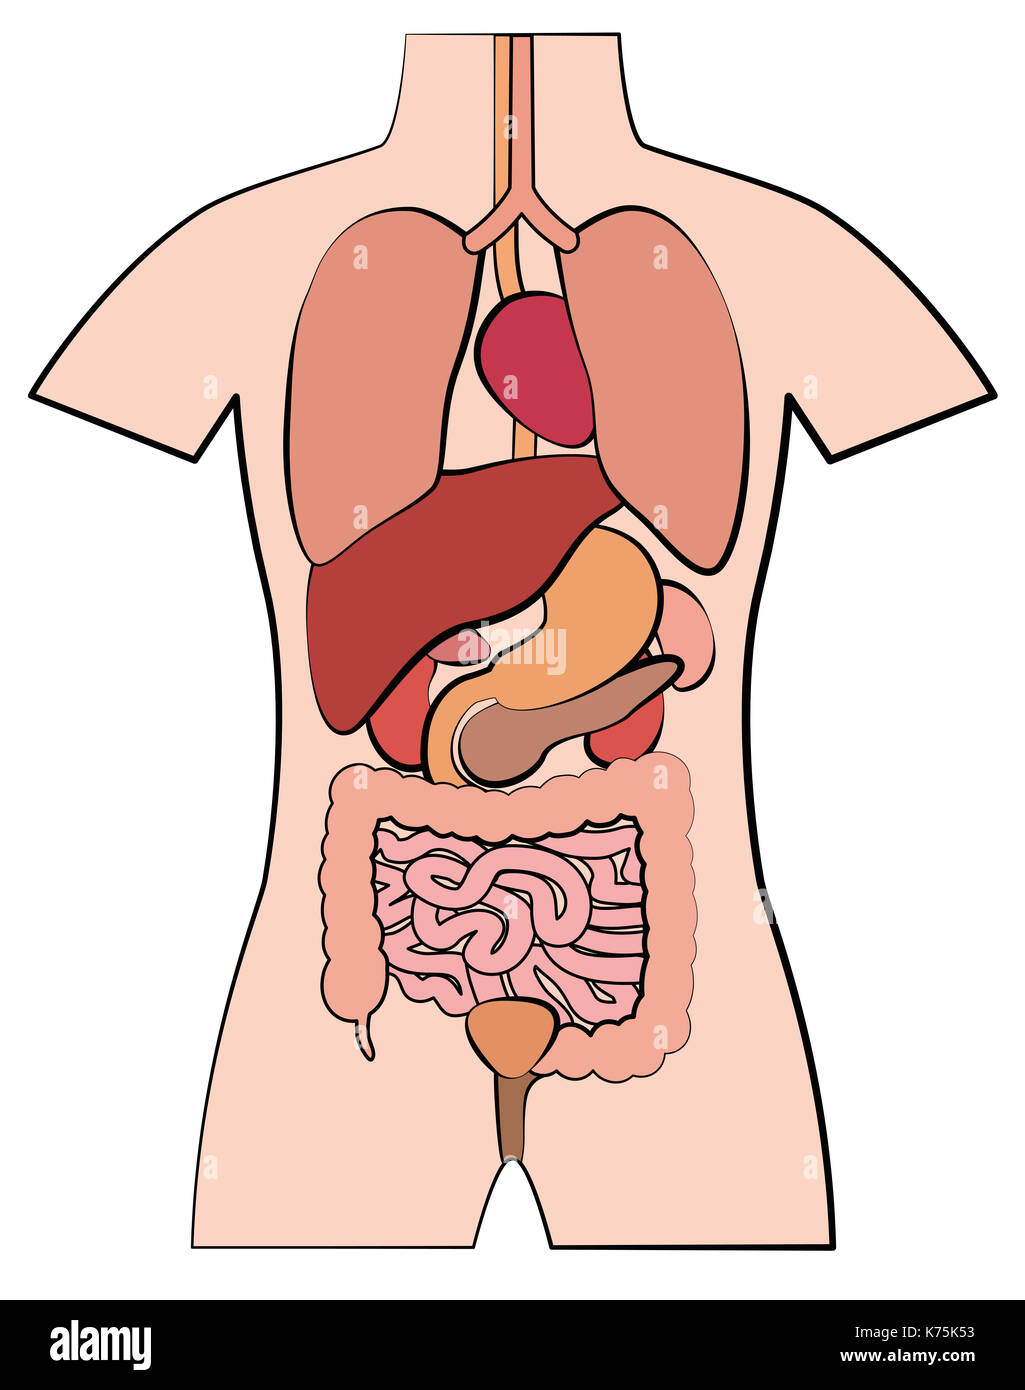 Anatomía Humana, órganos internos - esquemático estilo cómic ilustración sobre fondo blanco. Foto de stock